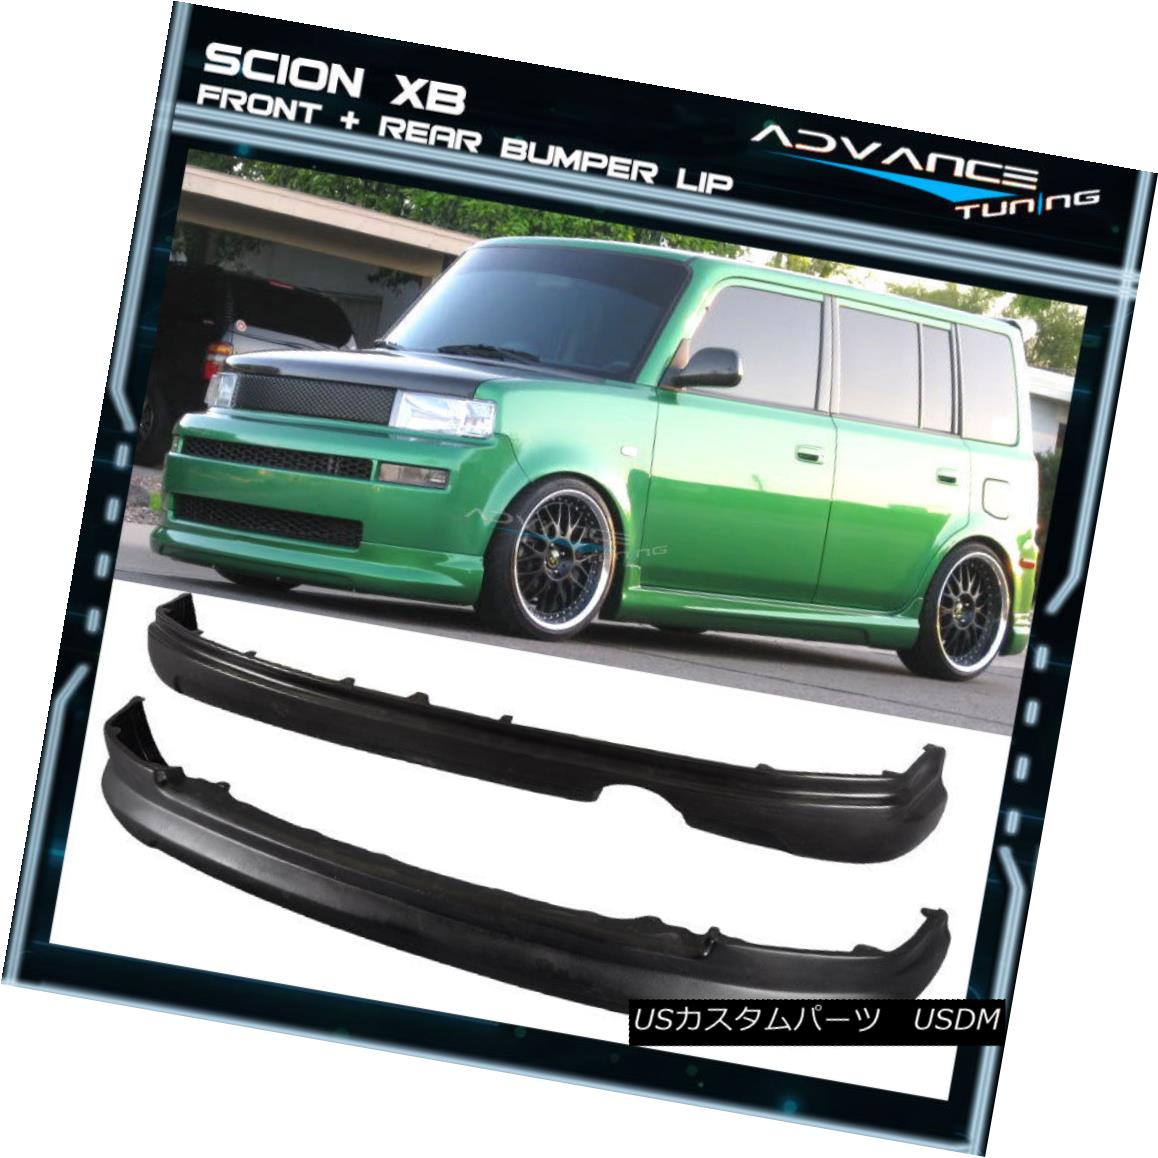 エアロパーツ For 03-07 Scion xB Wagon 5Dr PU Front+Rear Bumper Lip Spoiler Polyurethane 03-07シオン用xBワゴン5Dr PUフロント+リアバンパーリップスポイラーポリウレタン